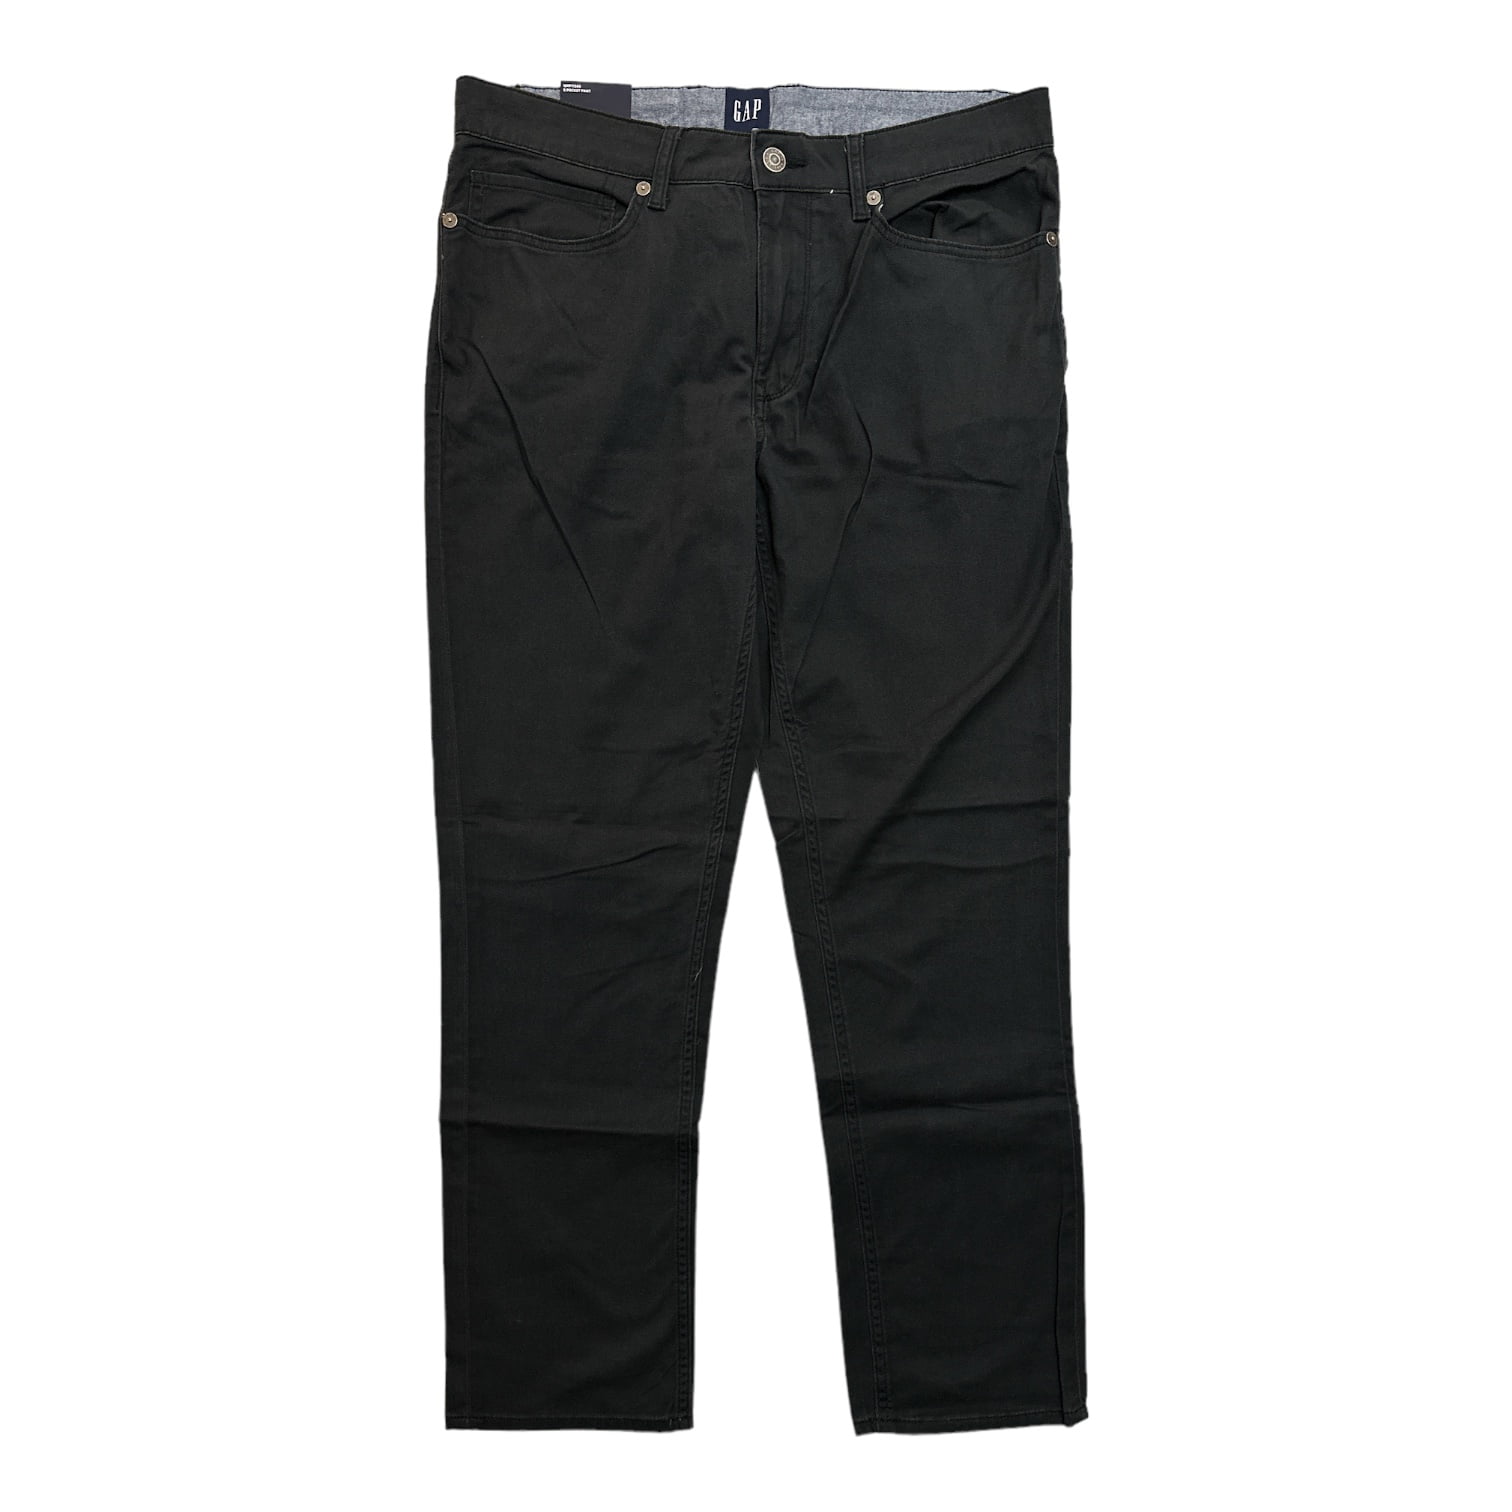 GAP Men's Super Soft Stretch Twill 5 Pocket Slim Fit Pant (Vintage